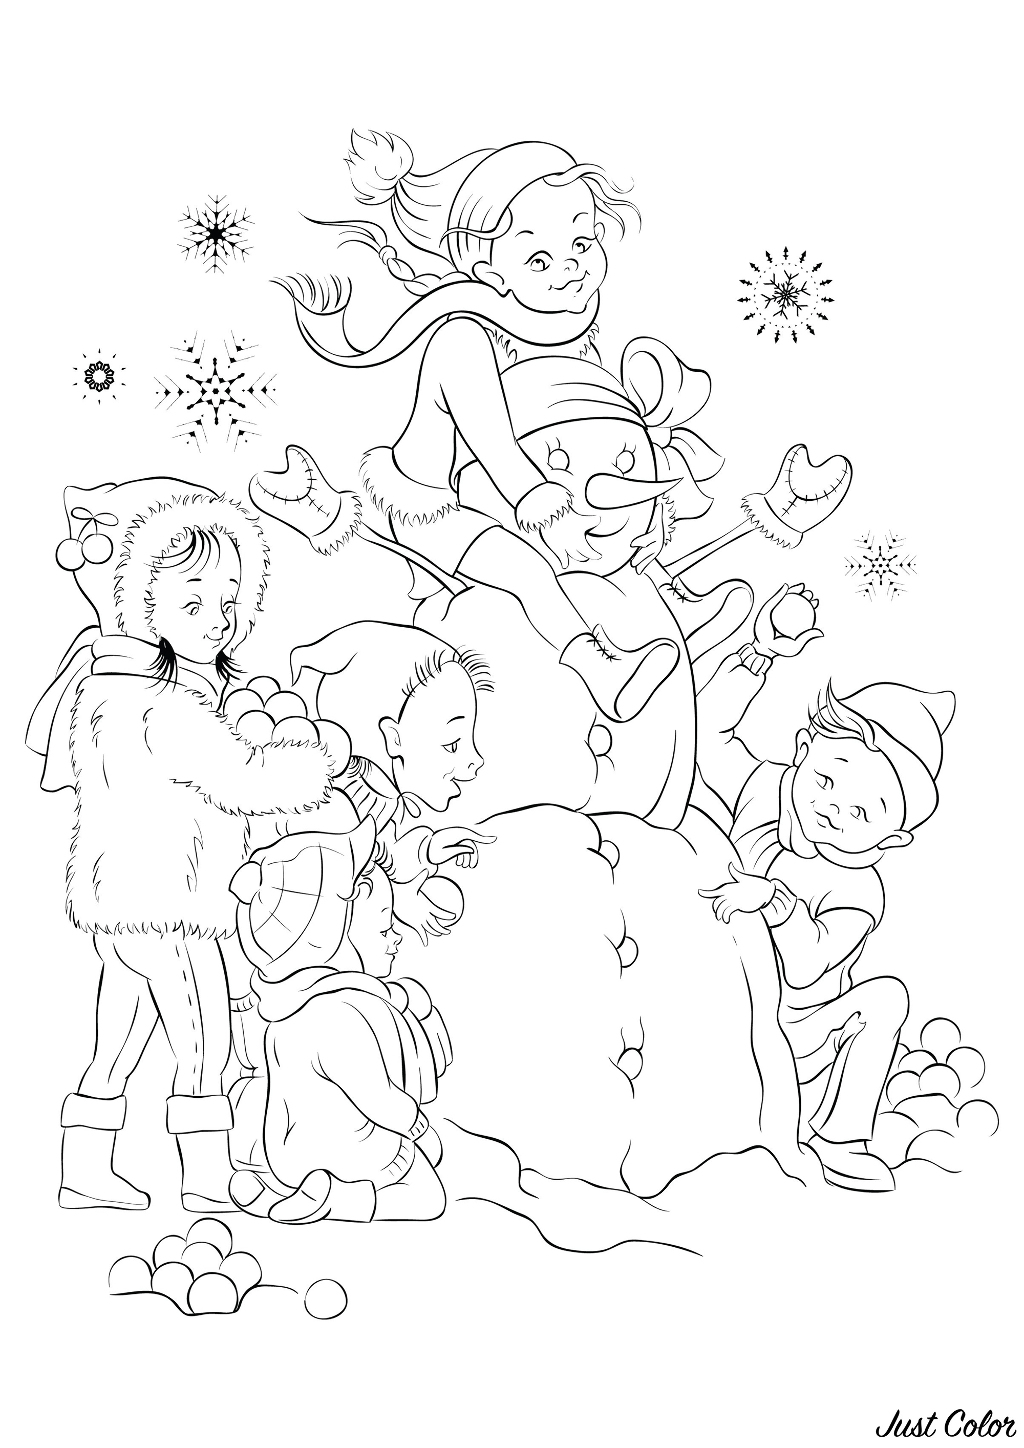 I bambini e il pupazzo di neve realizzato insieme alla neve fresca